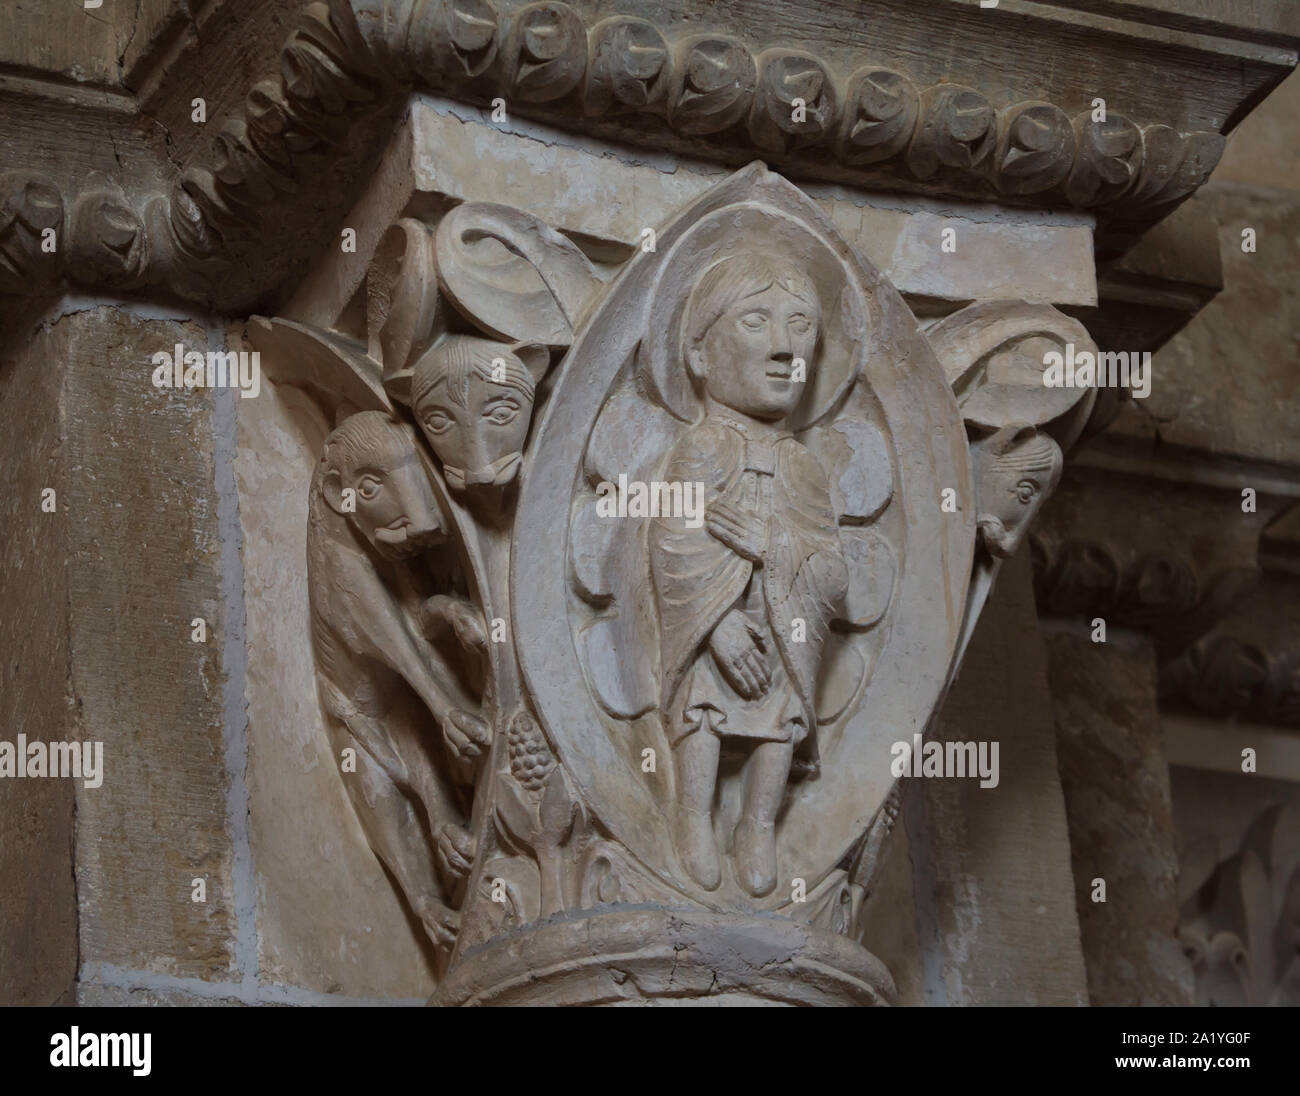 Daniele e i leoni rappresentato nel capitello romanico risale al xii secolo nella basilica di Santa Maria Maddalena (Basilique Sainte-Marie-Madeleine de Vézelay) di Vézelay Abbey (Abbaye Sainte-Marie-Madeleine de Vézelay) in Vézelay, Borgogna, Francia. Foto Stock